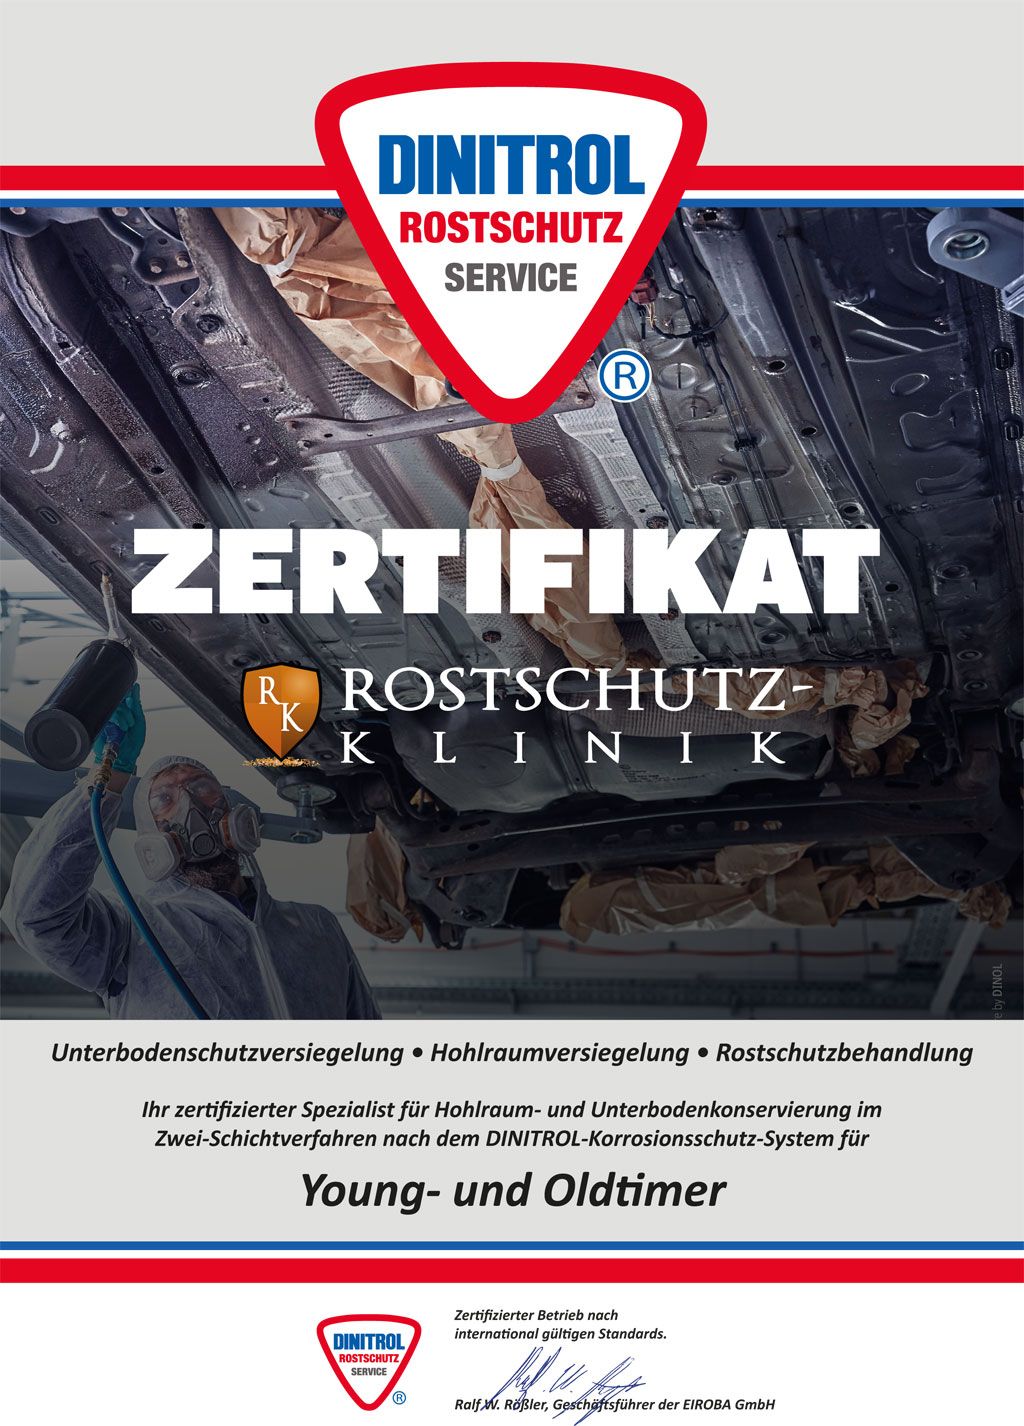 dinitrol-zertifikat-youngtimer-oldtimer